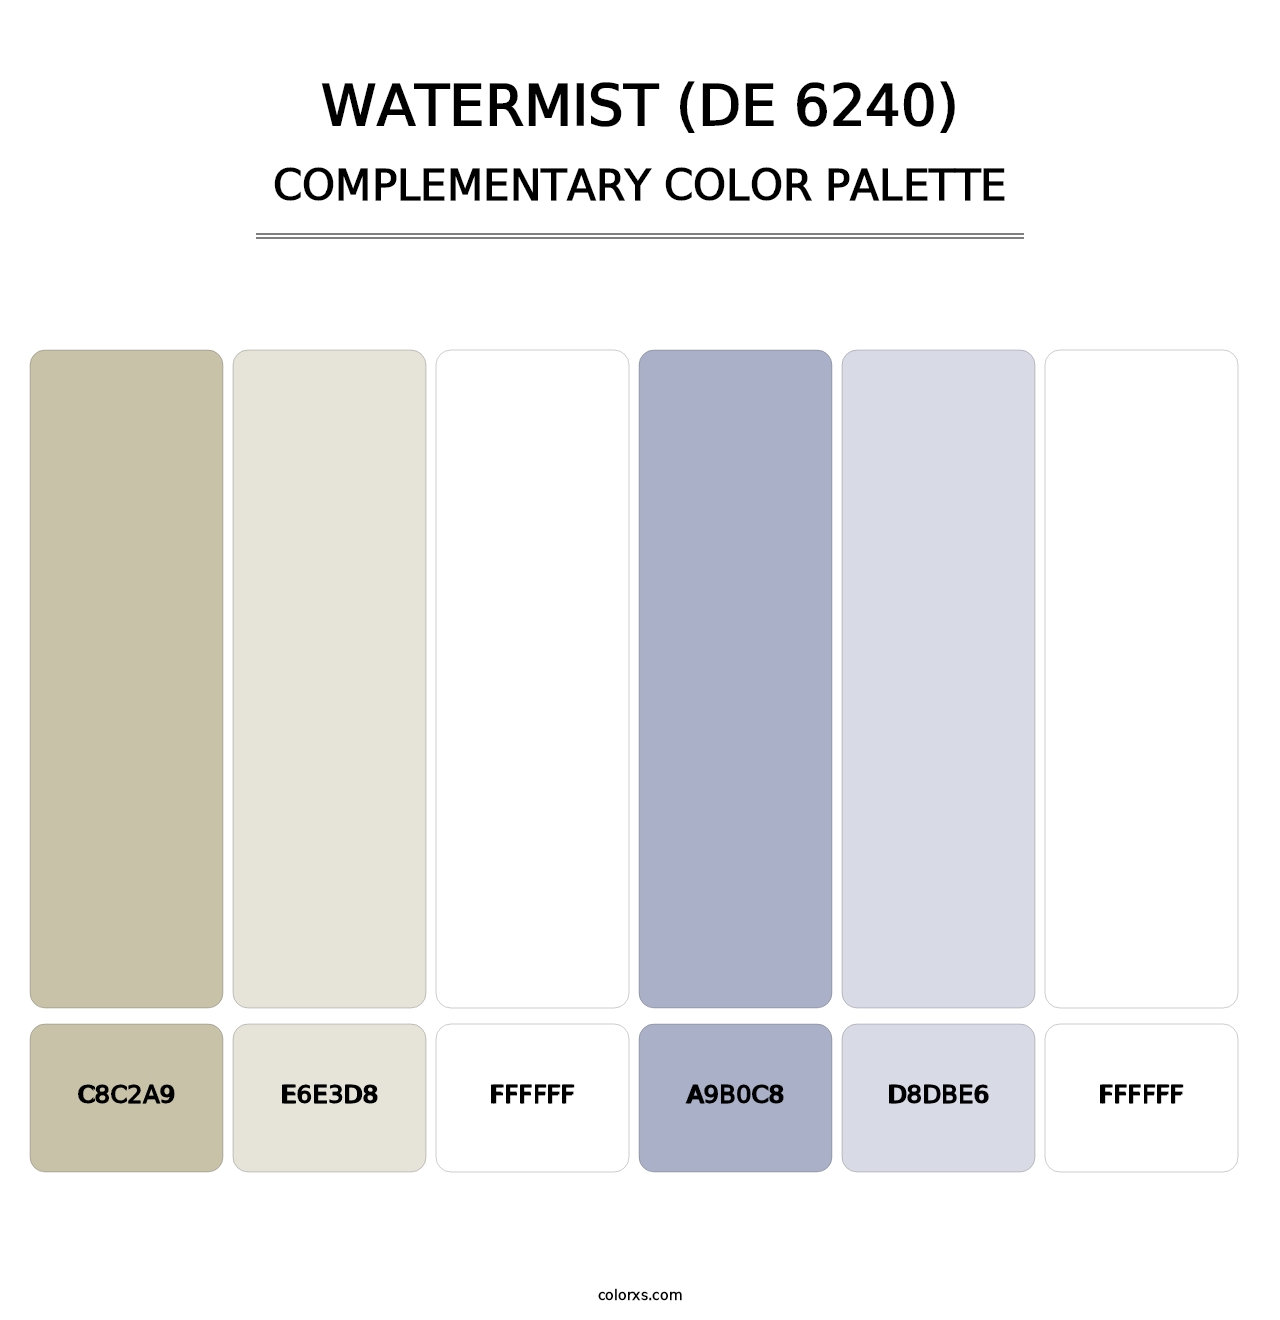 Watermist (DE 6240) - Complementary Color Palette